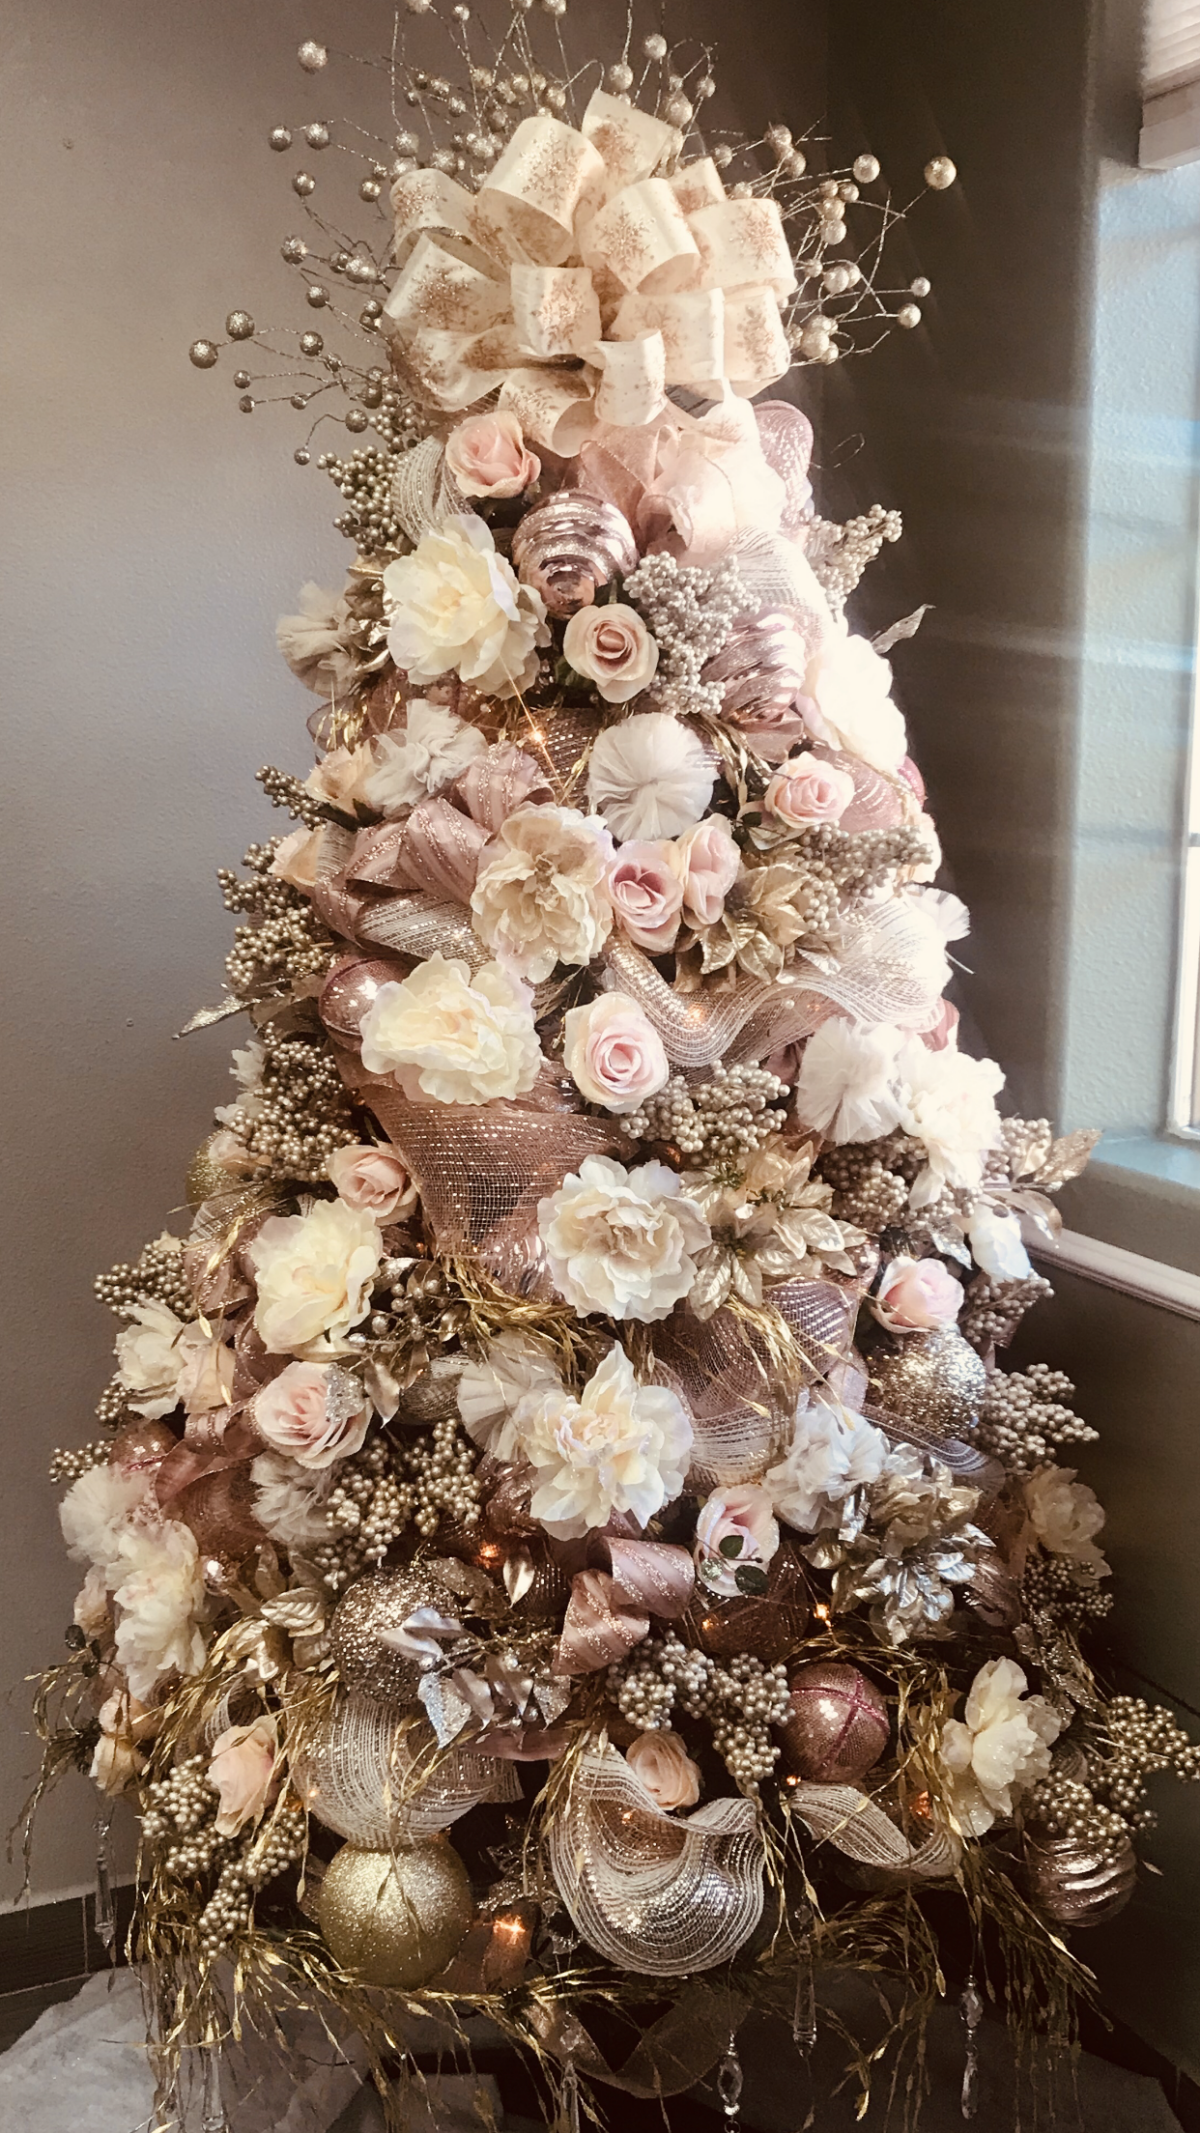 decorare albero natalizio con fiori finti stile shabby